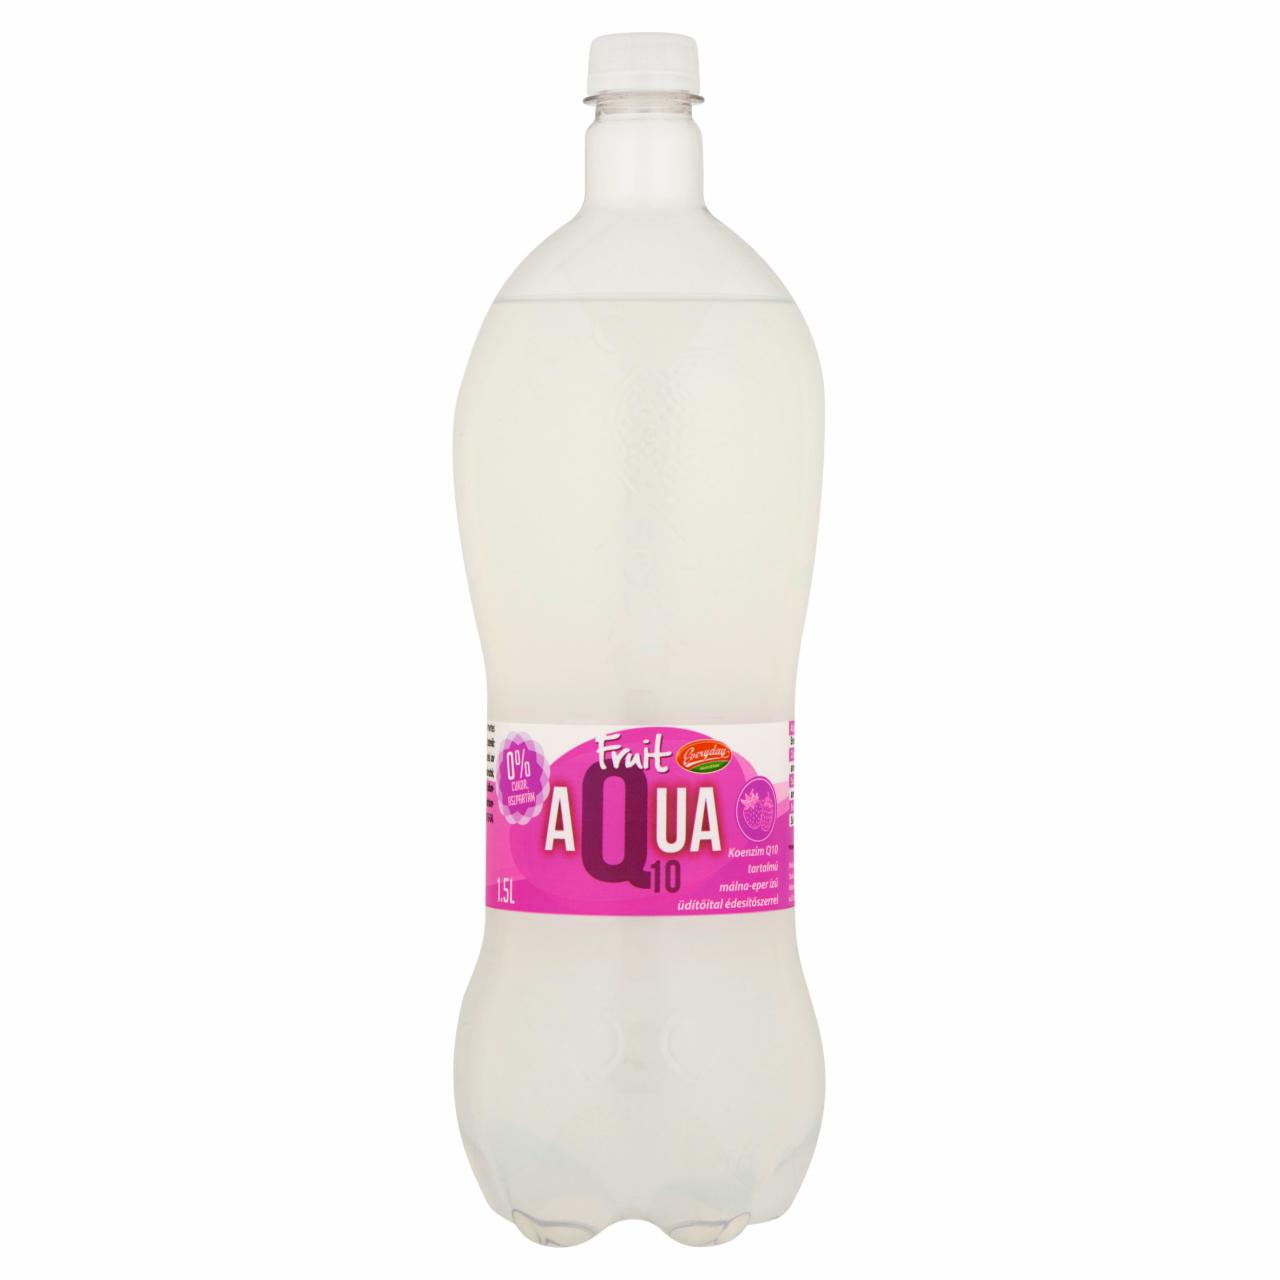 Képek - Everyday Fruit Aqua10 málna-eper ízű üdítőital édesítőszerrel 1,5 l